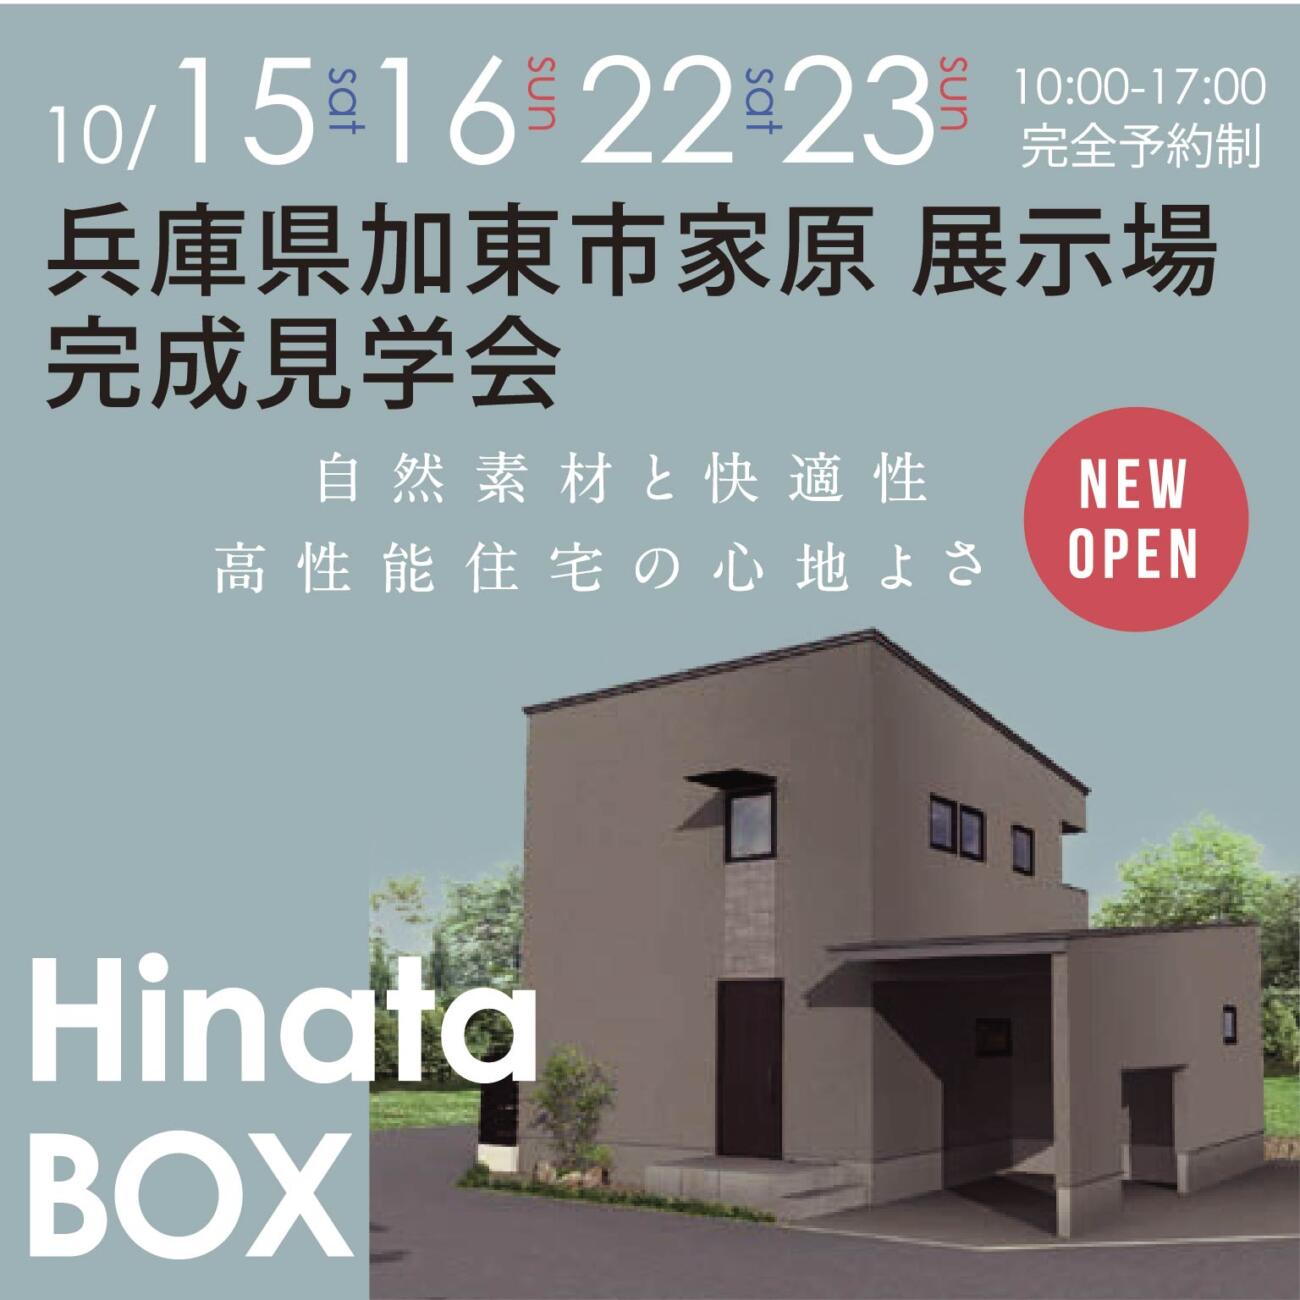 【NEW OPEN!!】加東市家原HinataBox展示場 完成見学会